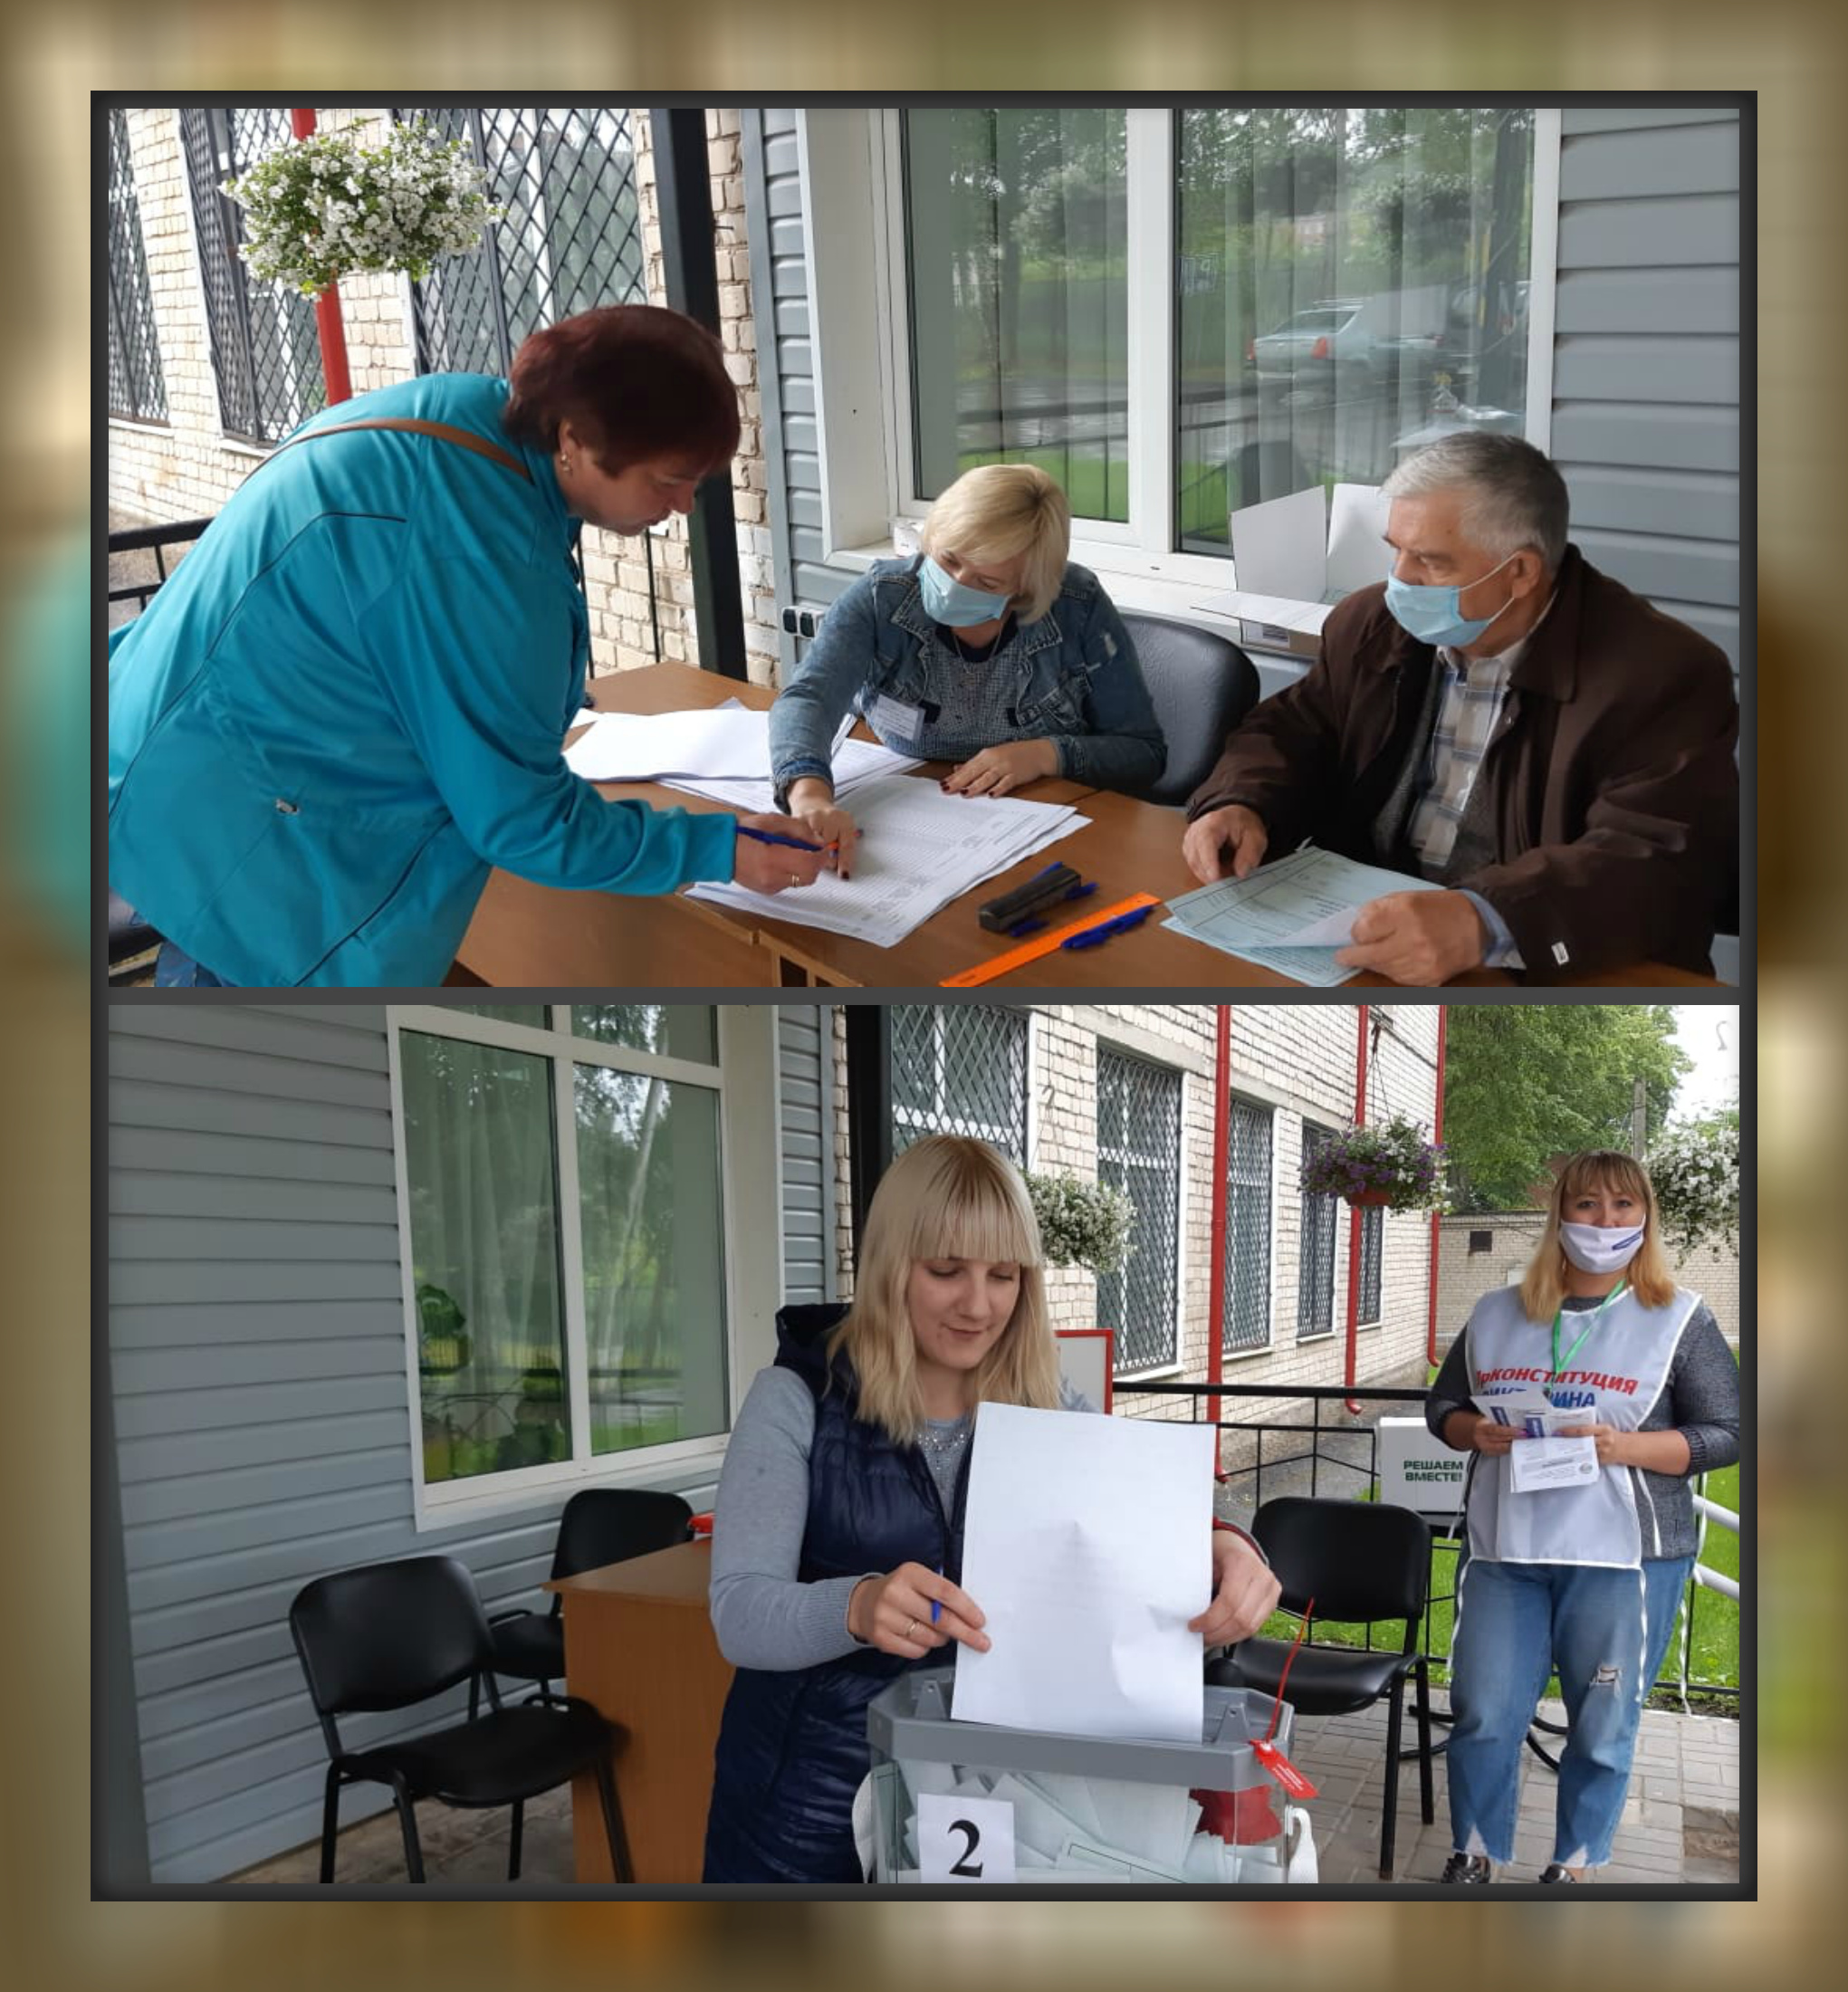 25 июня 2020 года сотрудники и получатели социальных услуг смогли досрочно принять участие в общероссийском голосовании по поправкам в Конституцию. 